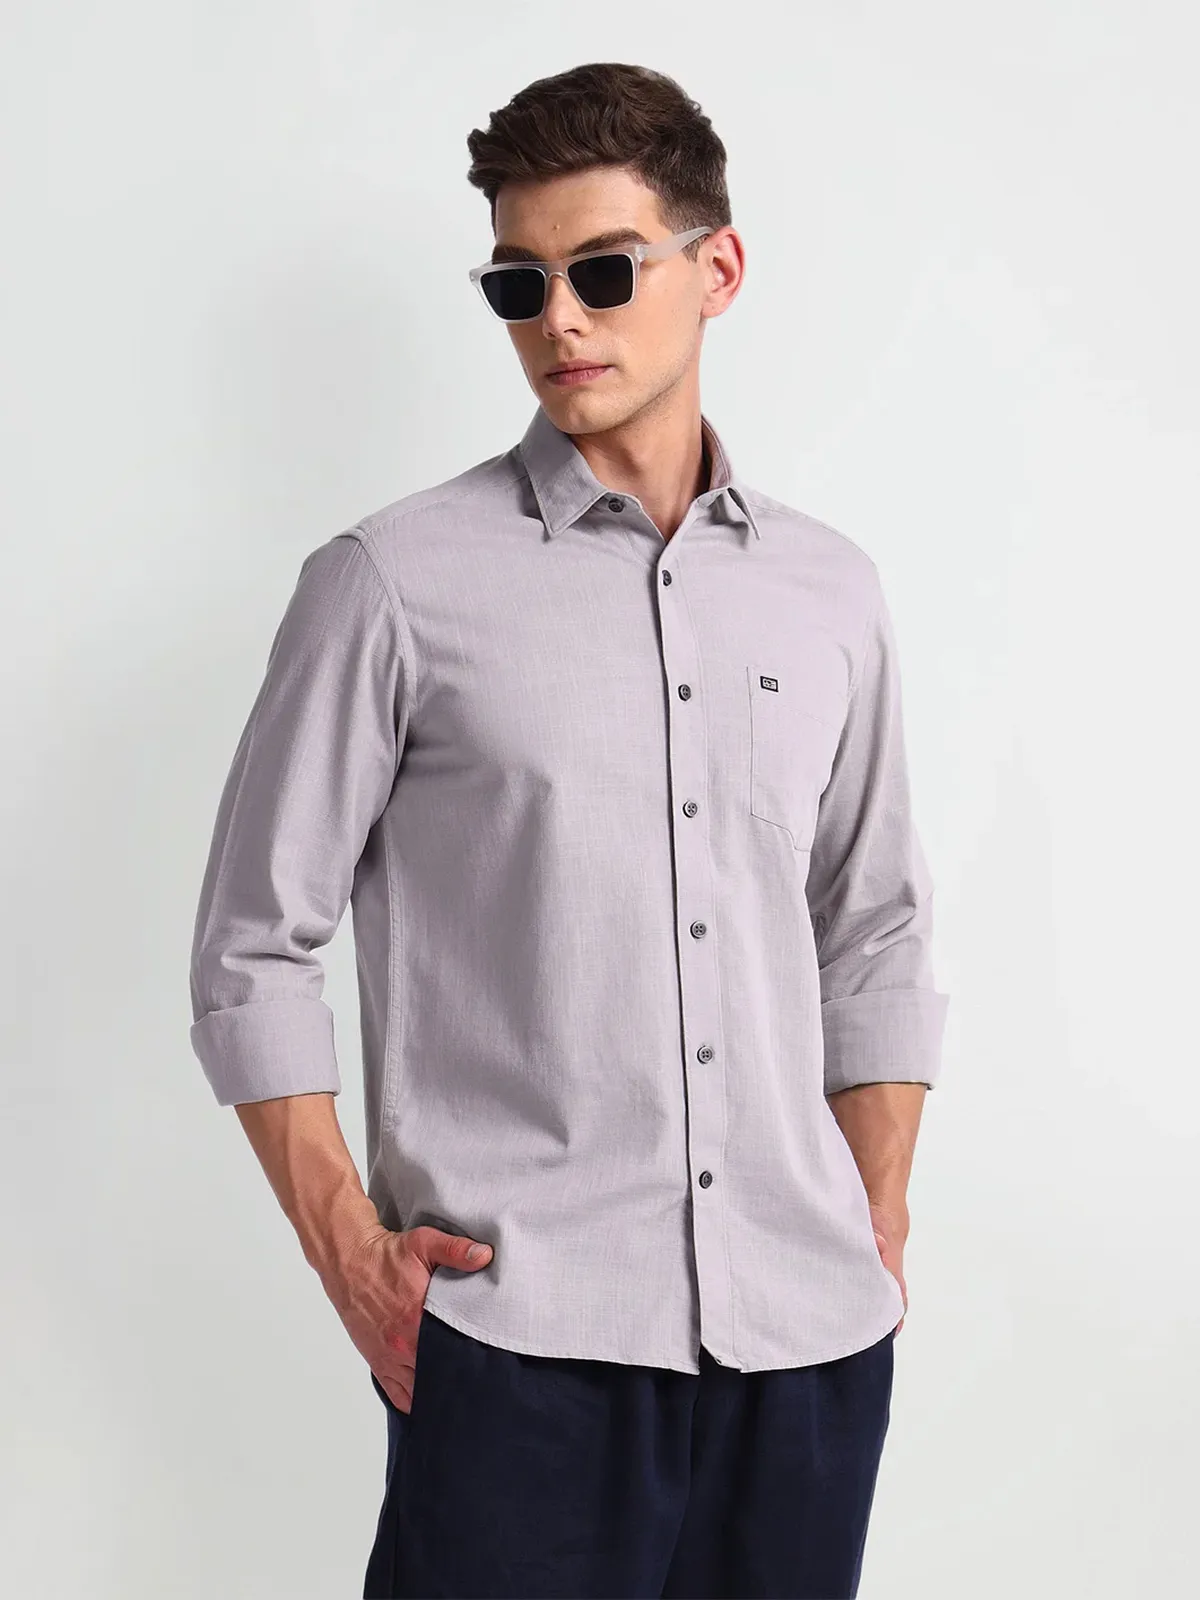 ARROW SPORT plain light grey cotton shirt